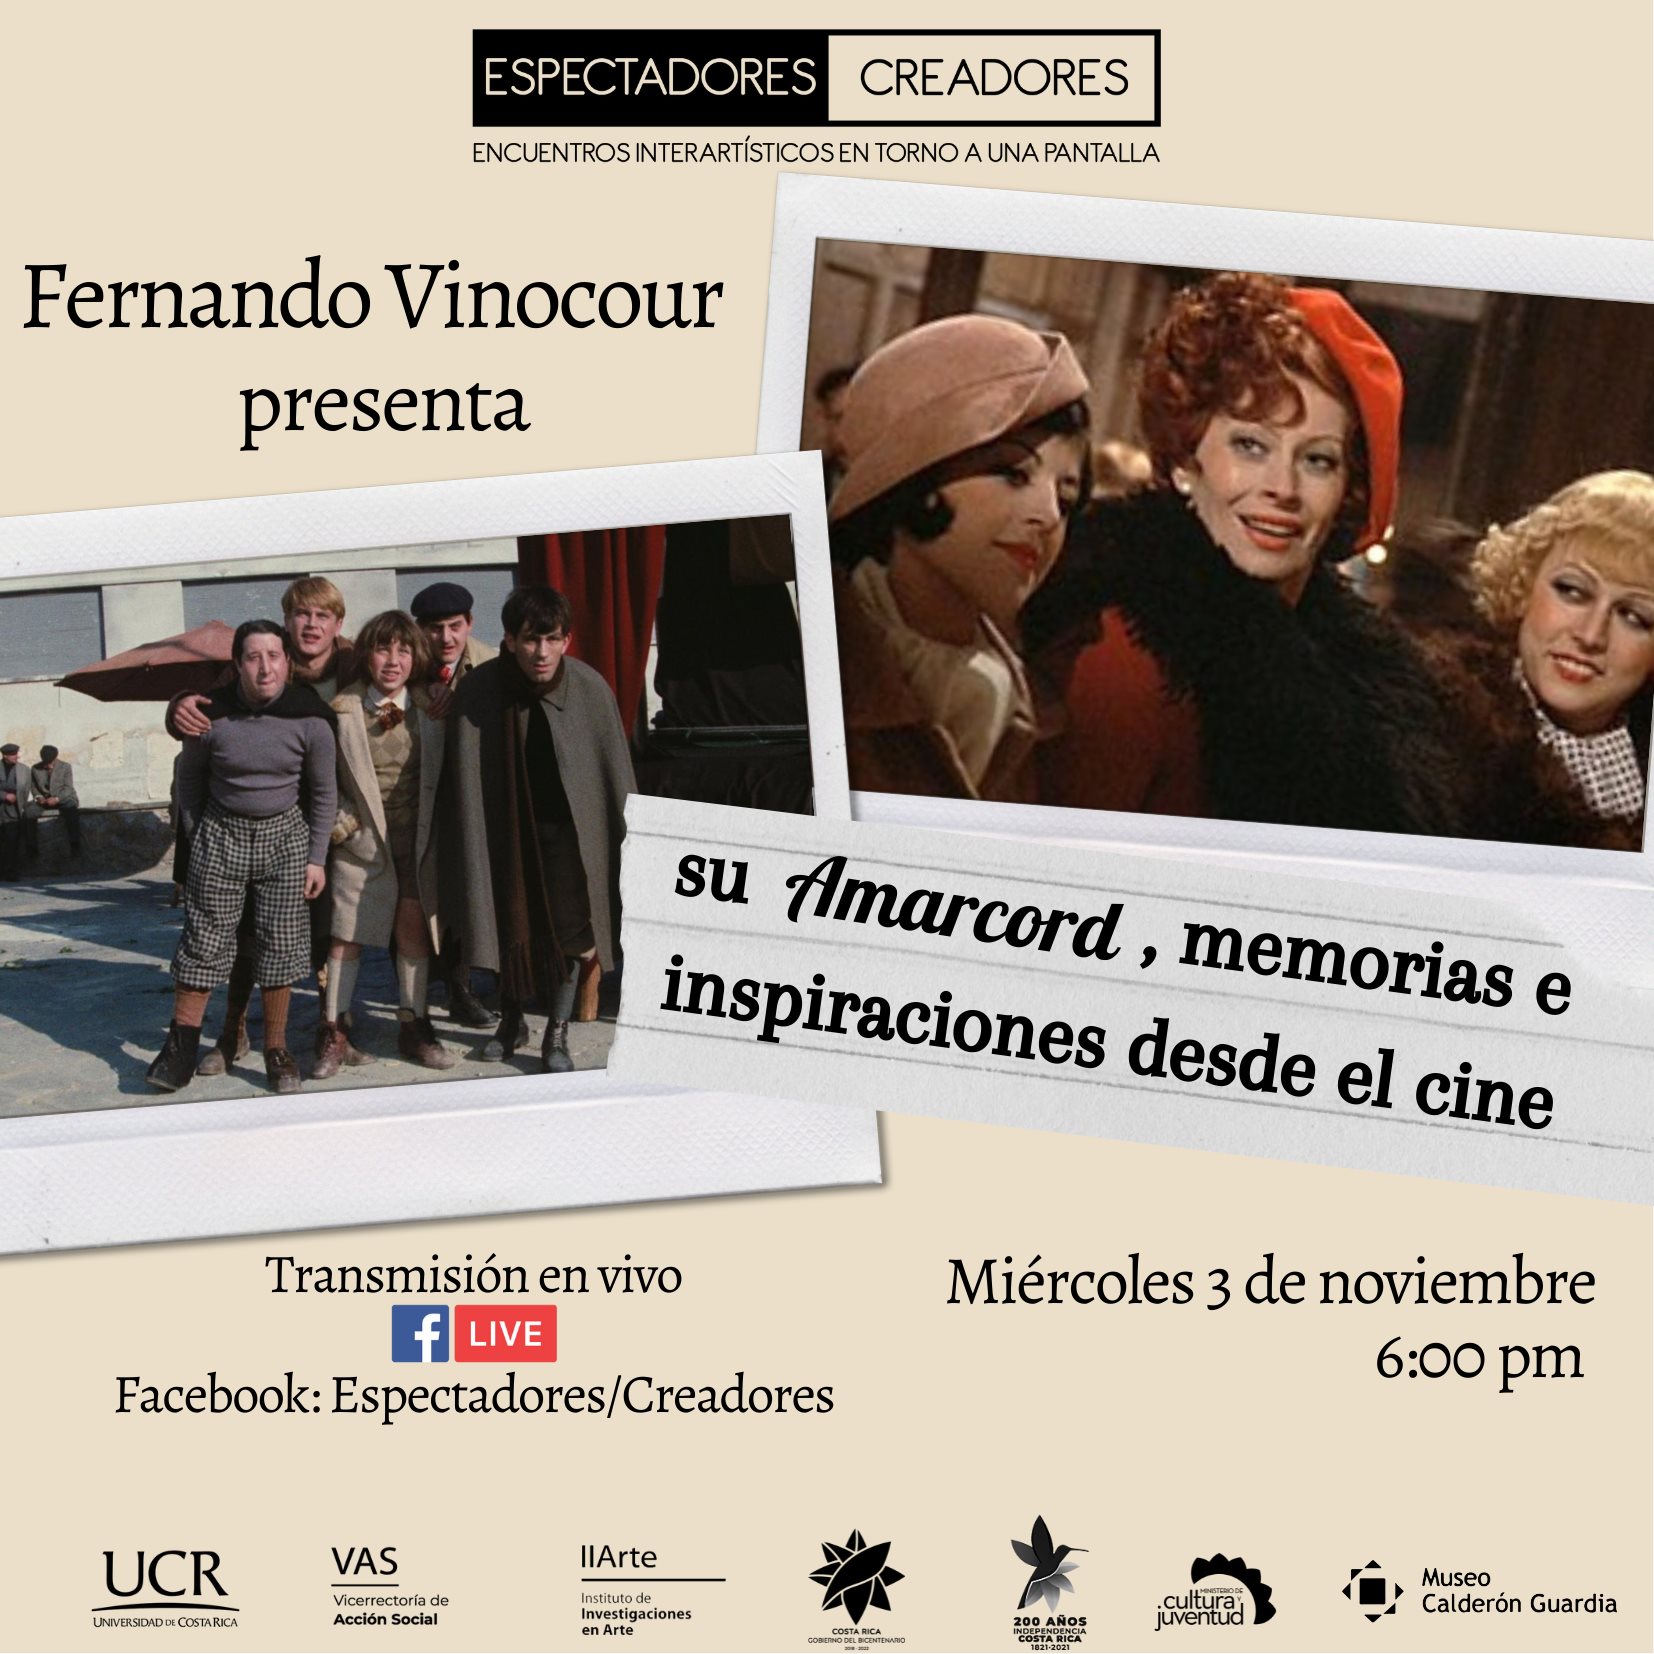 Fernando Vinocour presenta su Amarcord, memorias e inspiraciones desde el cine